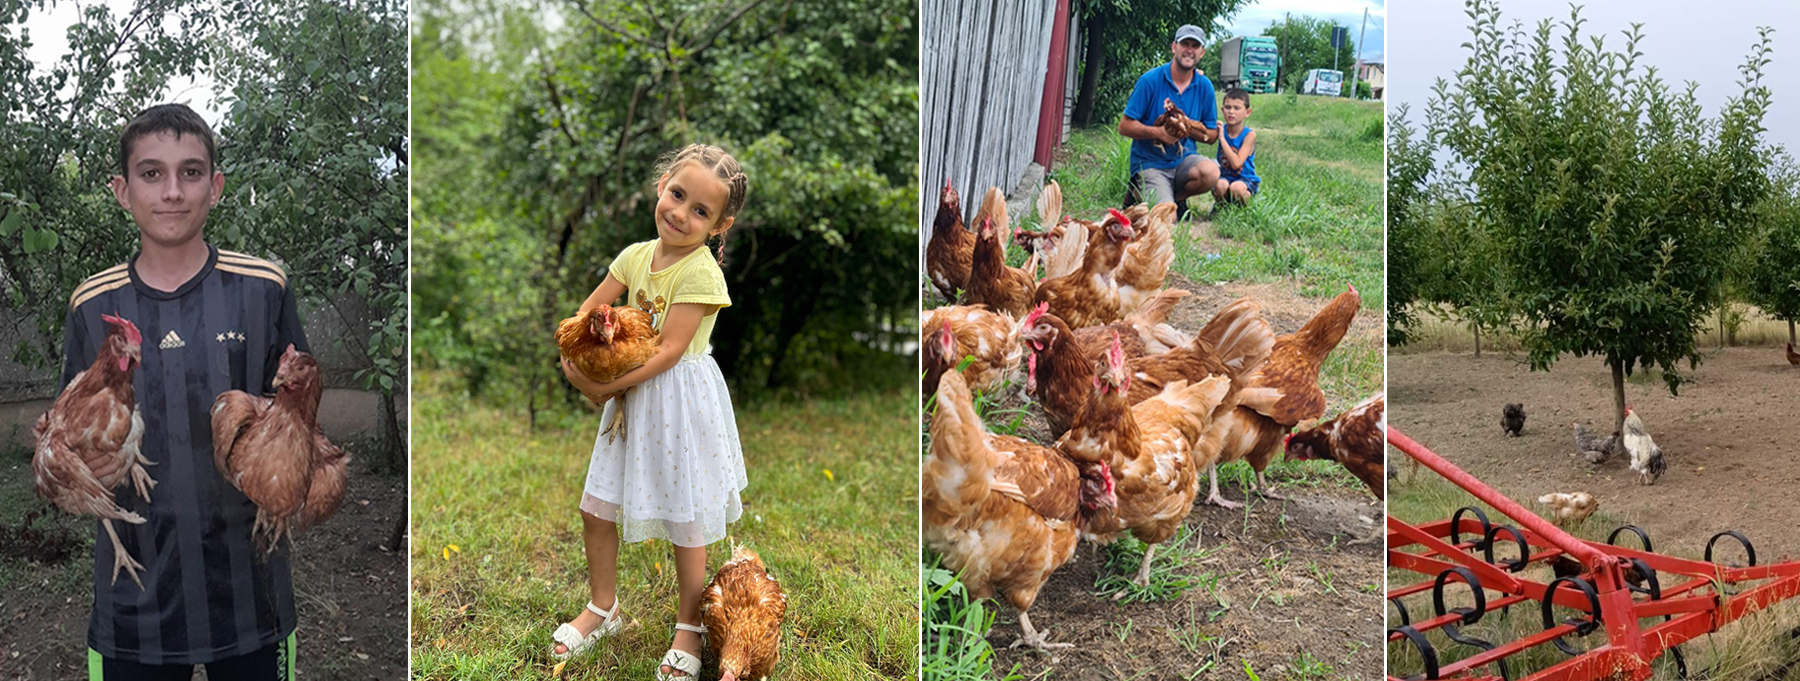 Fundația Carmistin a donat 10.000 găini ouătoare BIO, în cadrul unei campanii anuale dedicate comunitățiIor